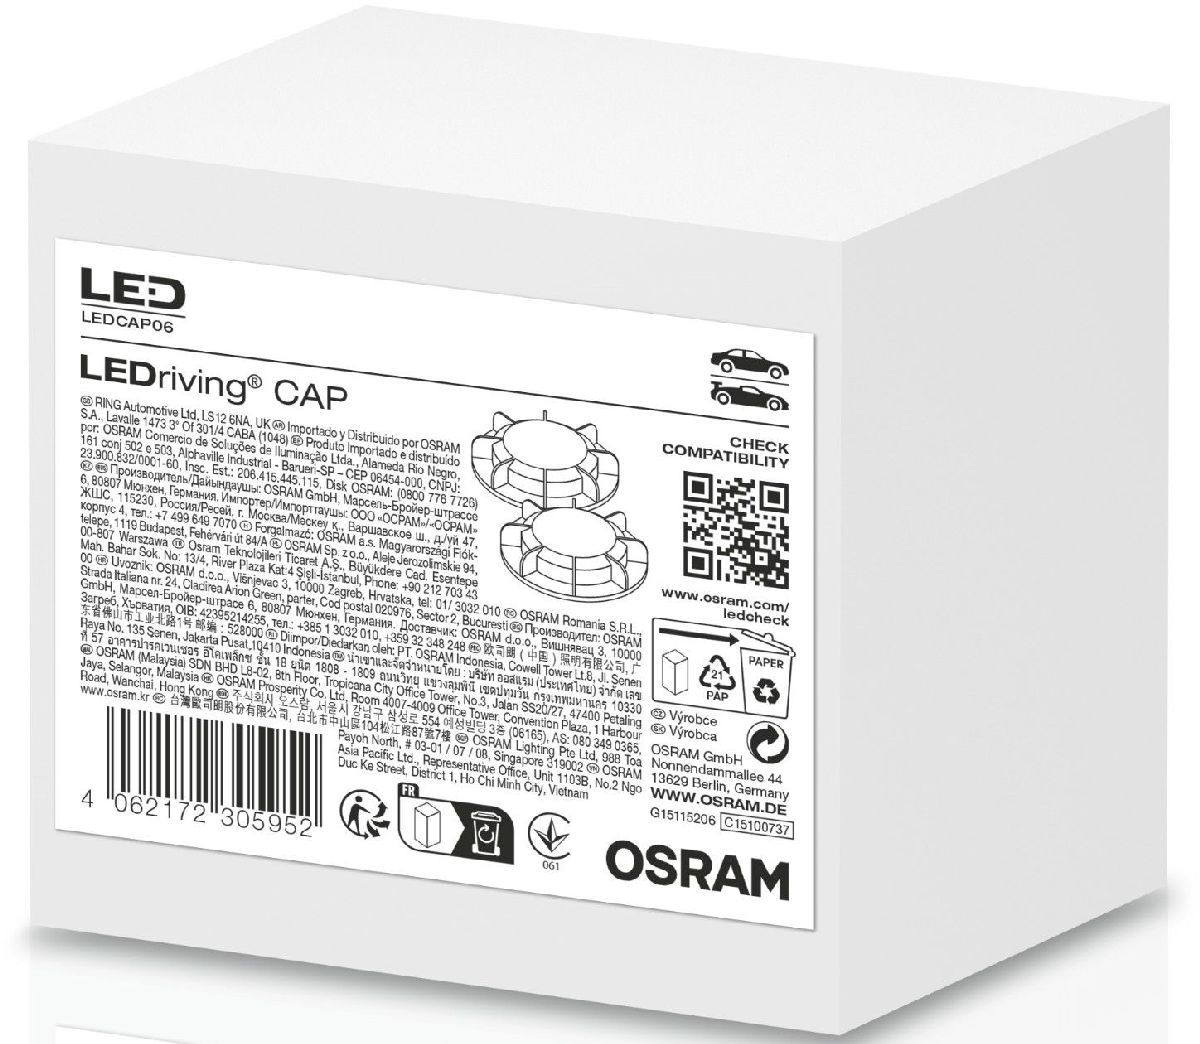 LEDriving Cap Ledcap06 Durchmesser 76mm